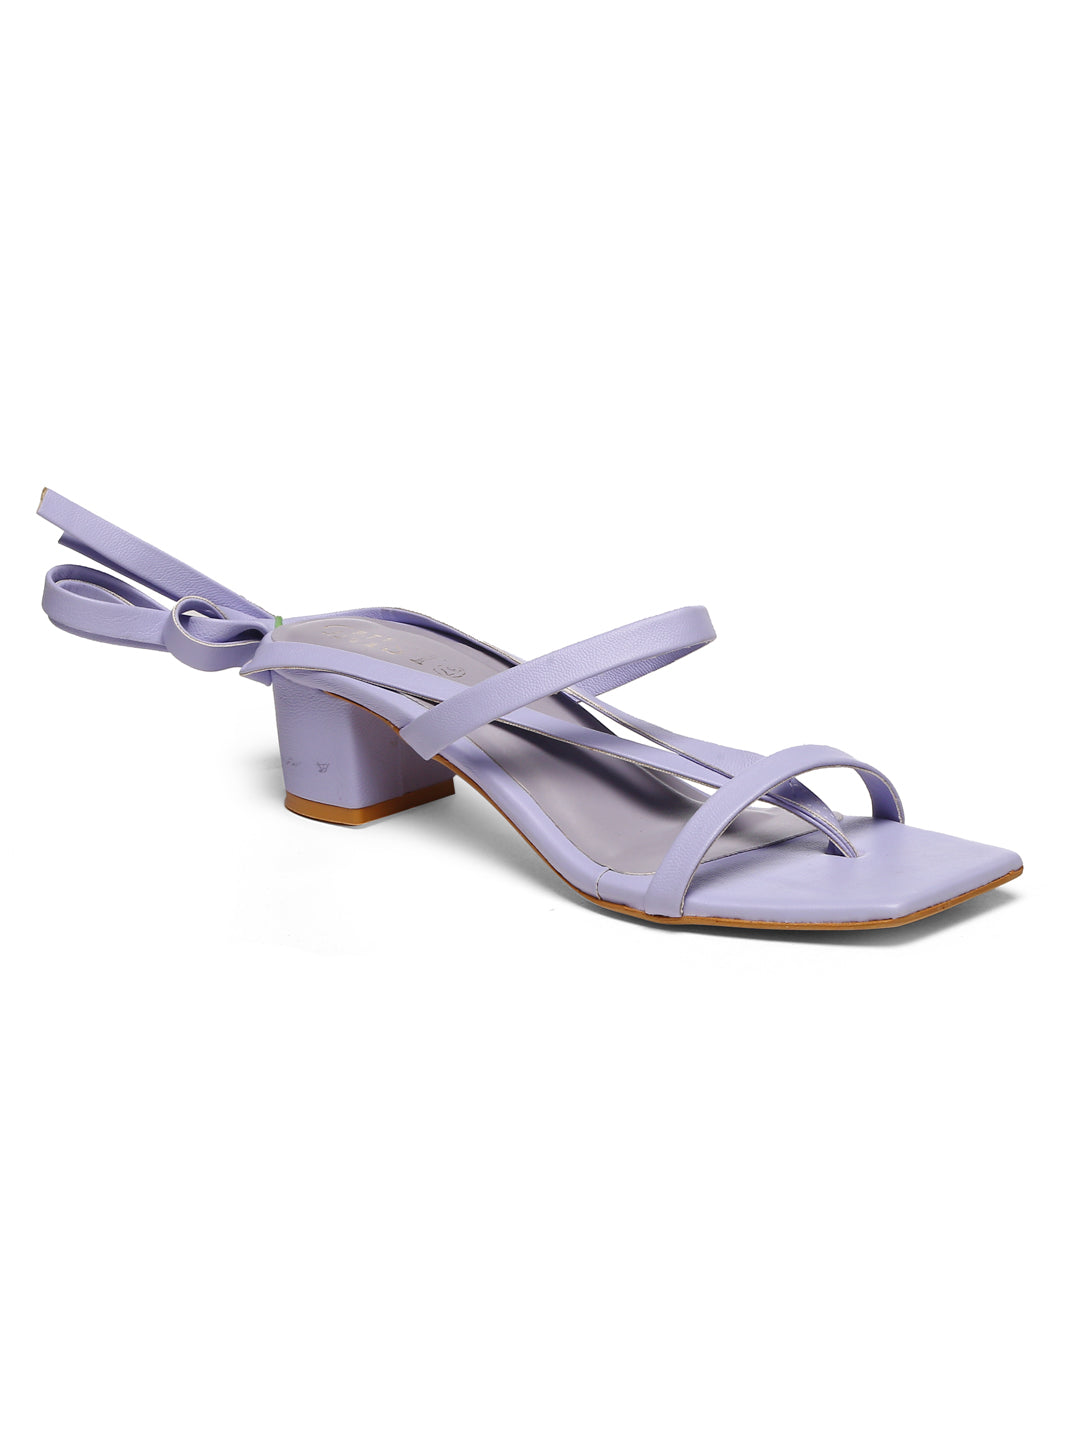 GNIST Lavender Strappy Block Heel Sandal